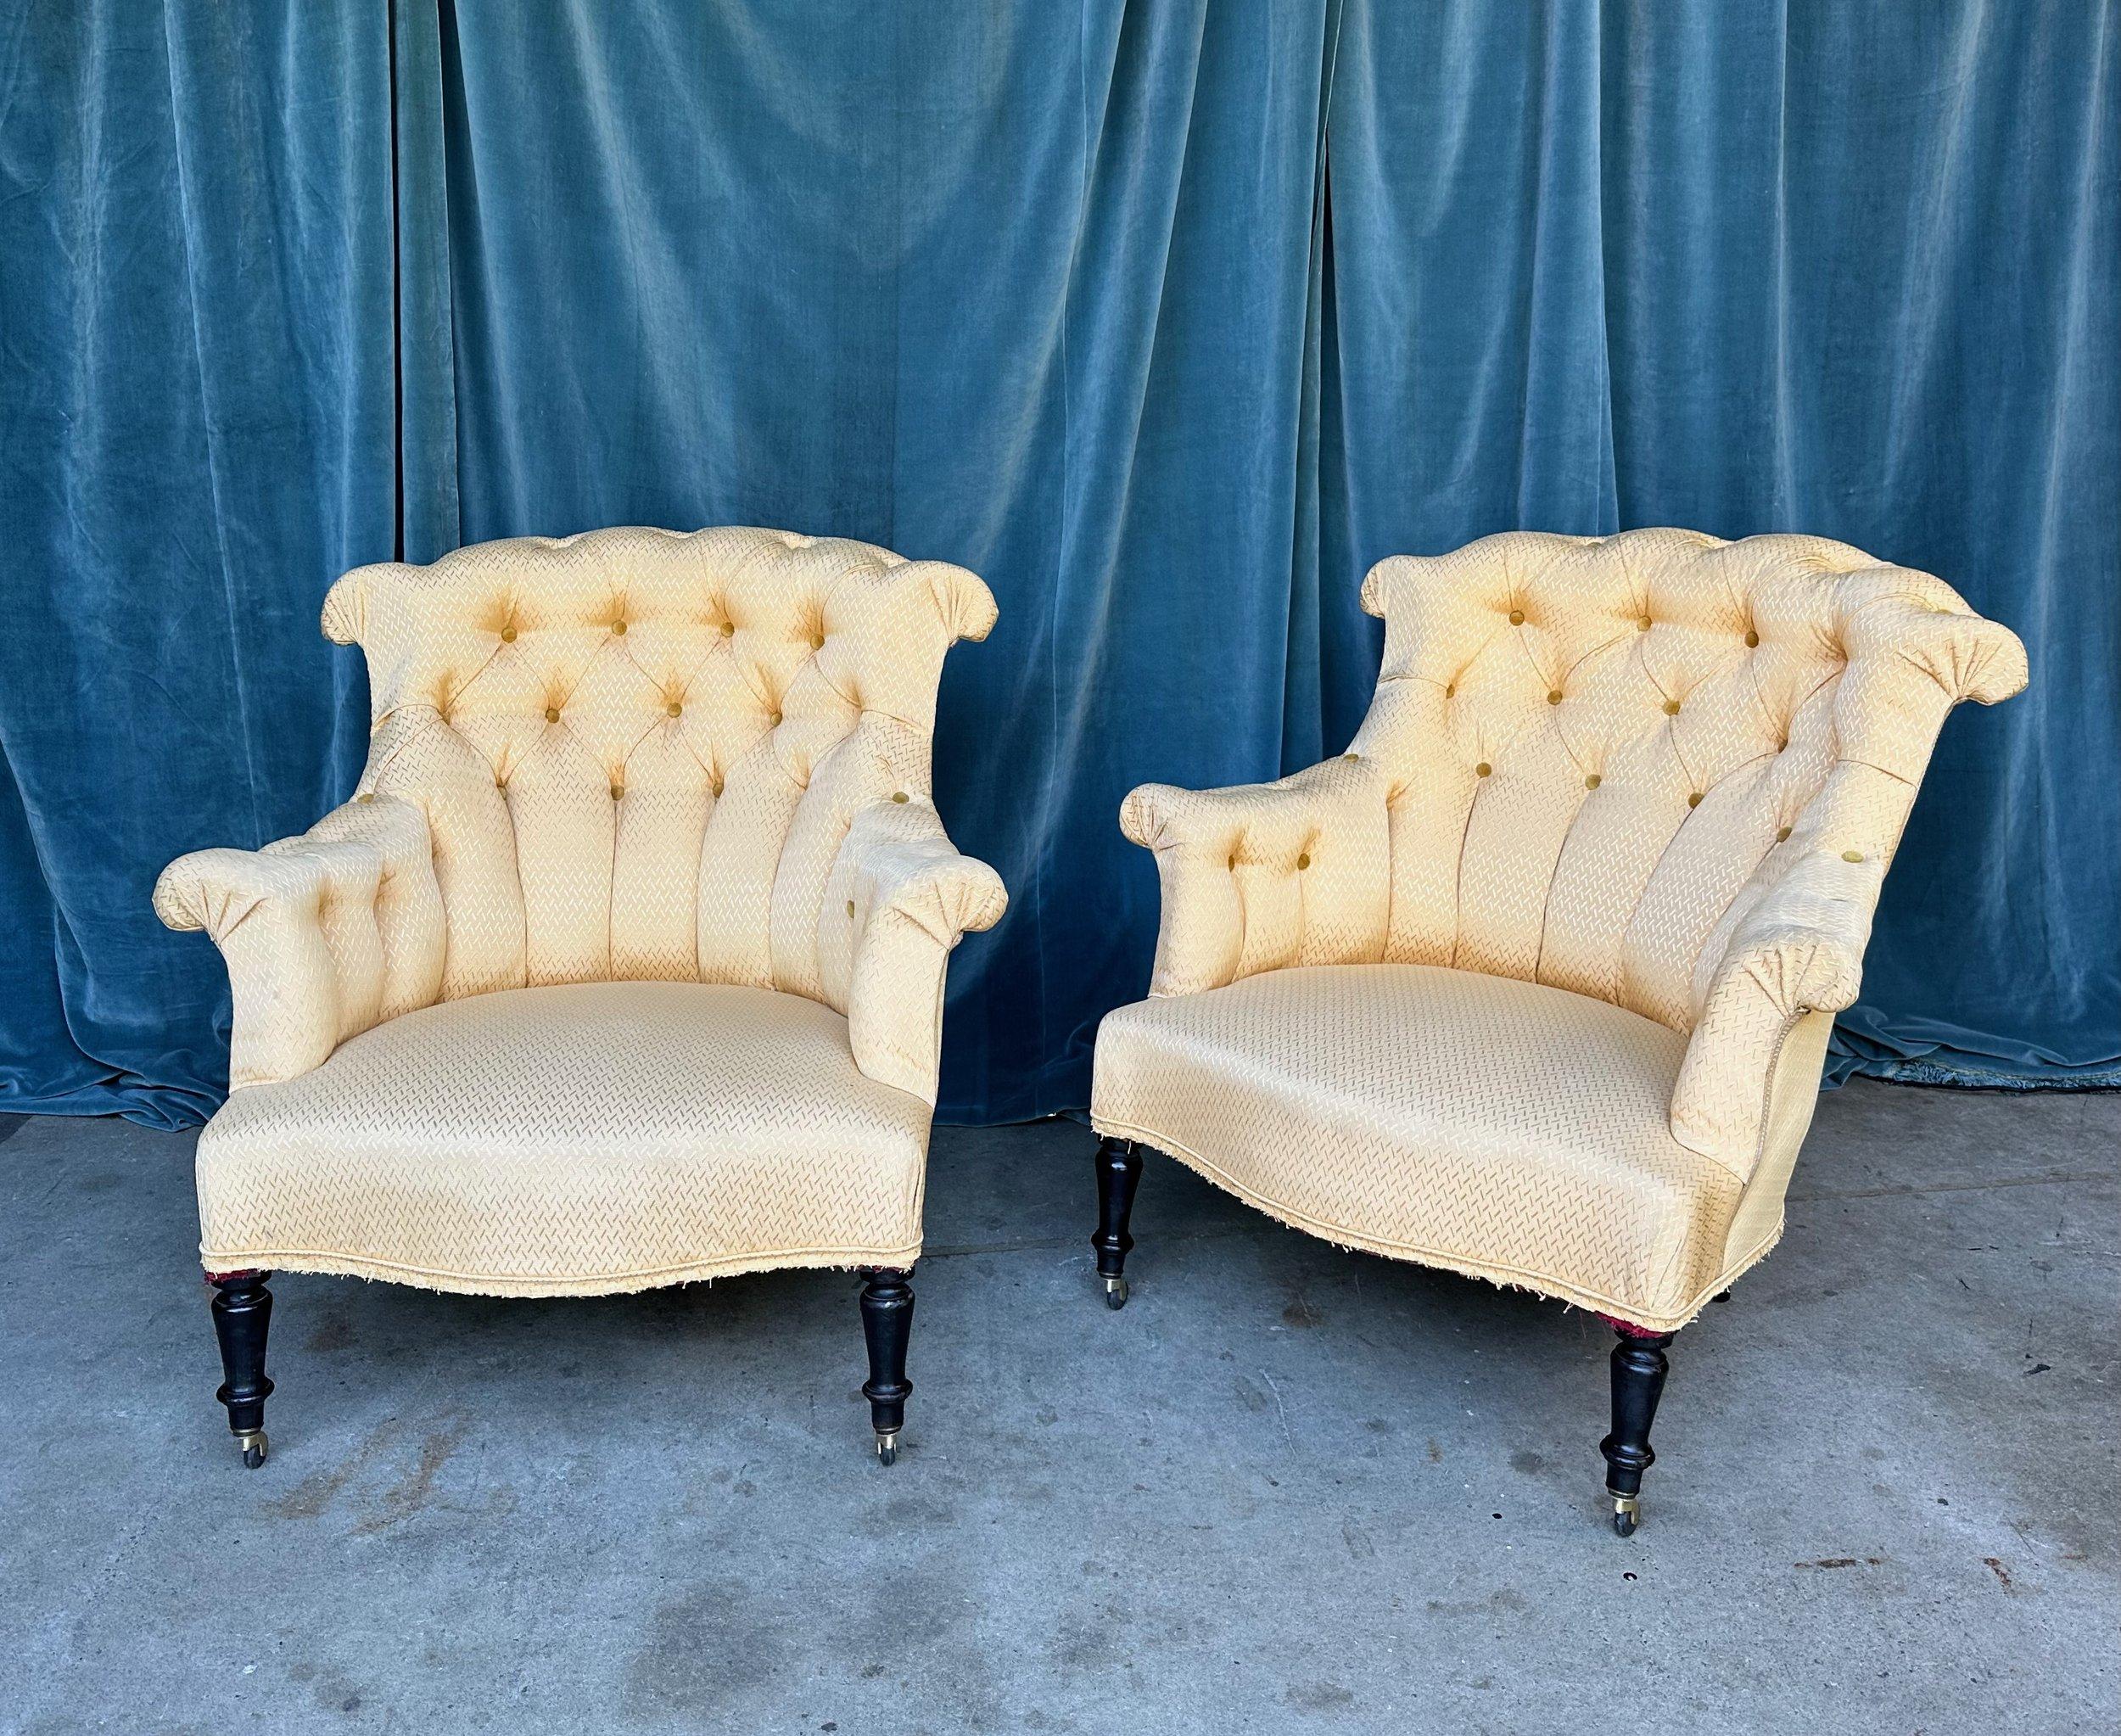 Ein exquisites Paar französischer Sessel aus der Zeit Napoleons III. aus dem späten 19. Jahrhundert. Mit ihren getufteten Rückenlehnen und der eingebauten Lendenwirbelstütze sind diese Stühle bemerkenswert bequem und perfekt proportioniert. Die